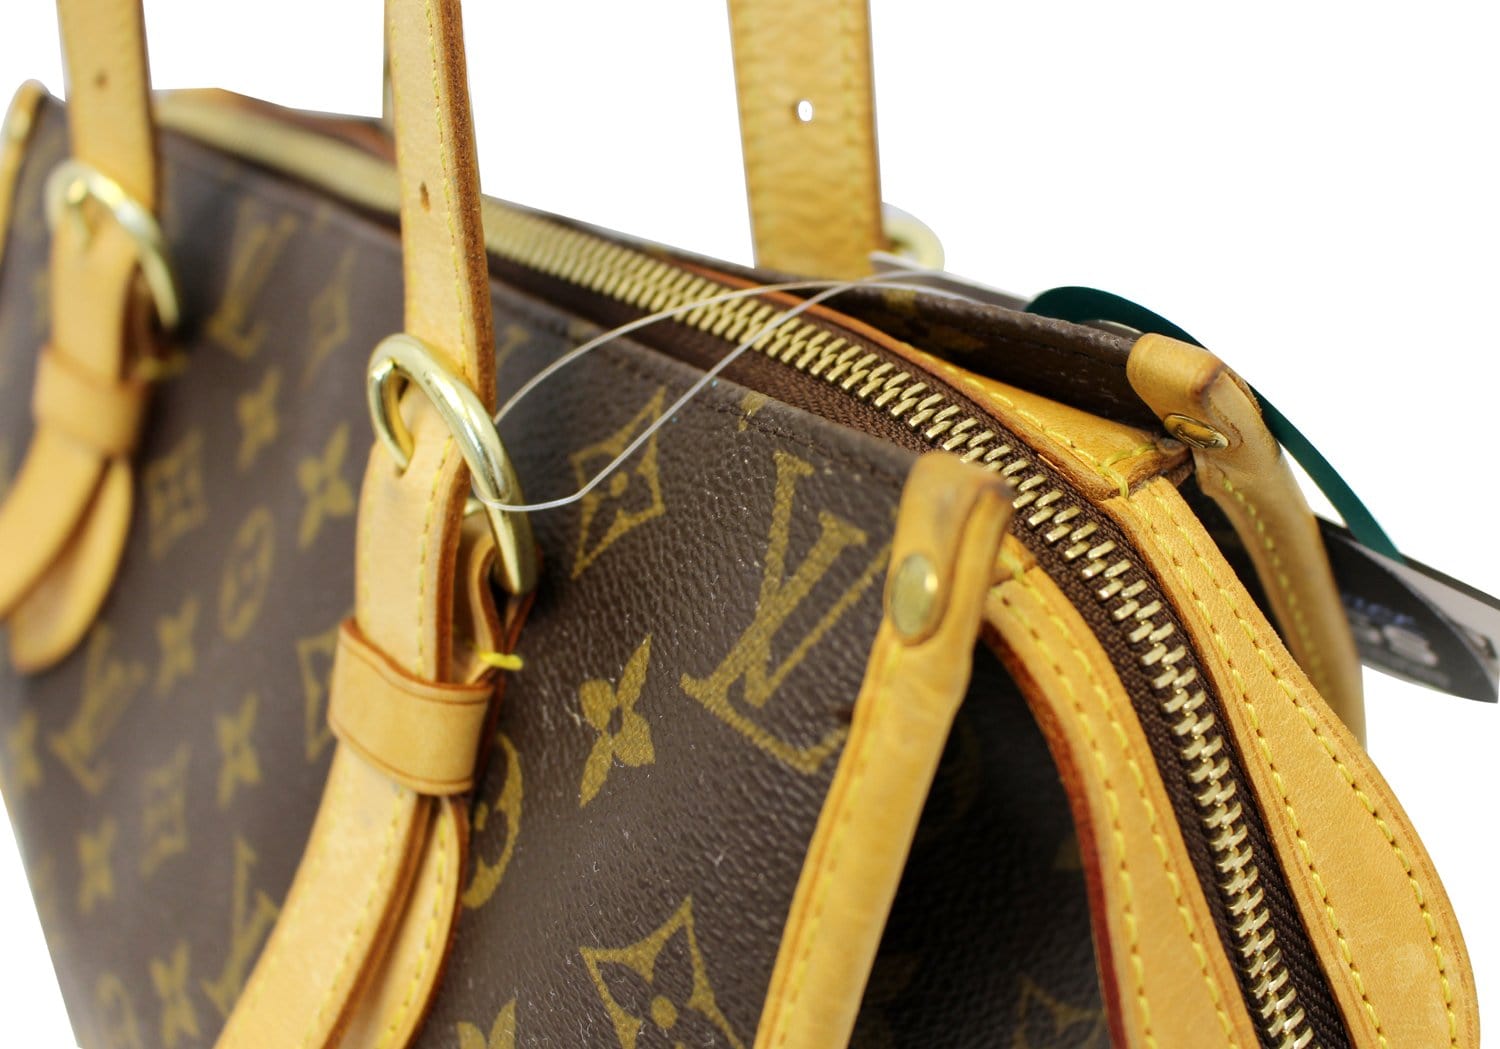 Louis Vuitton Popincourt Haut Tote Bag #fashion #bag #fyp